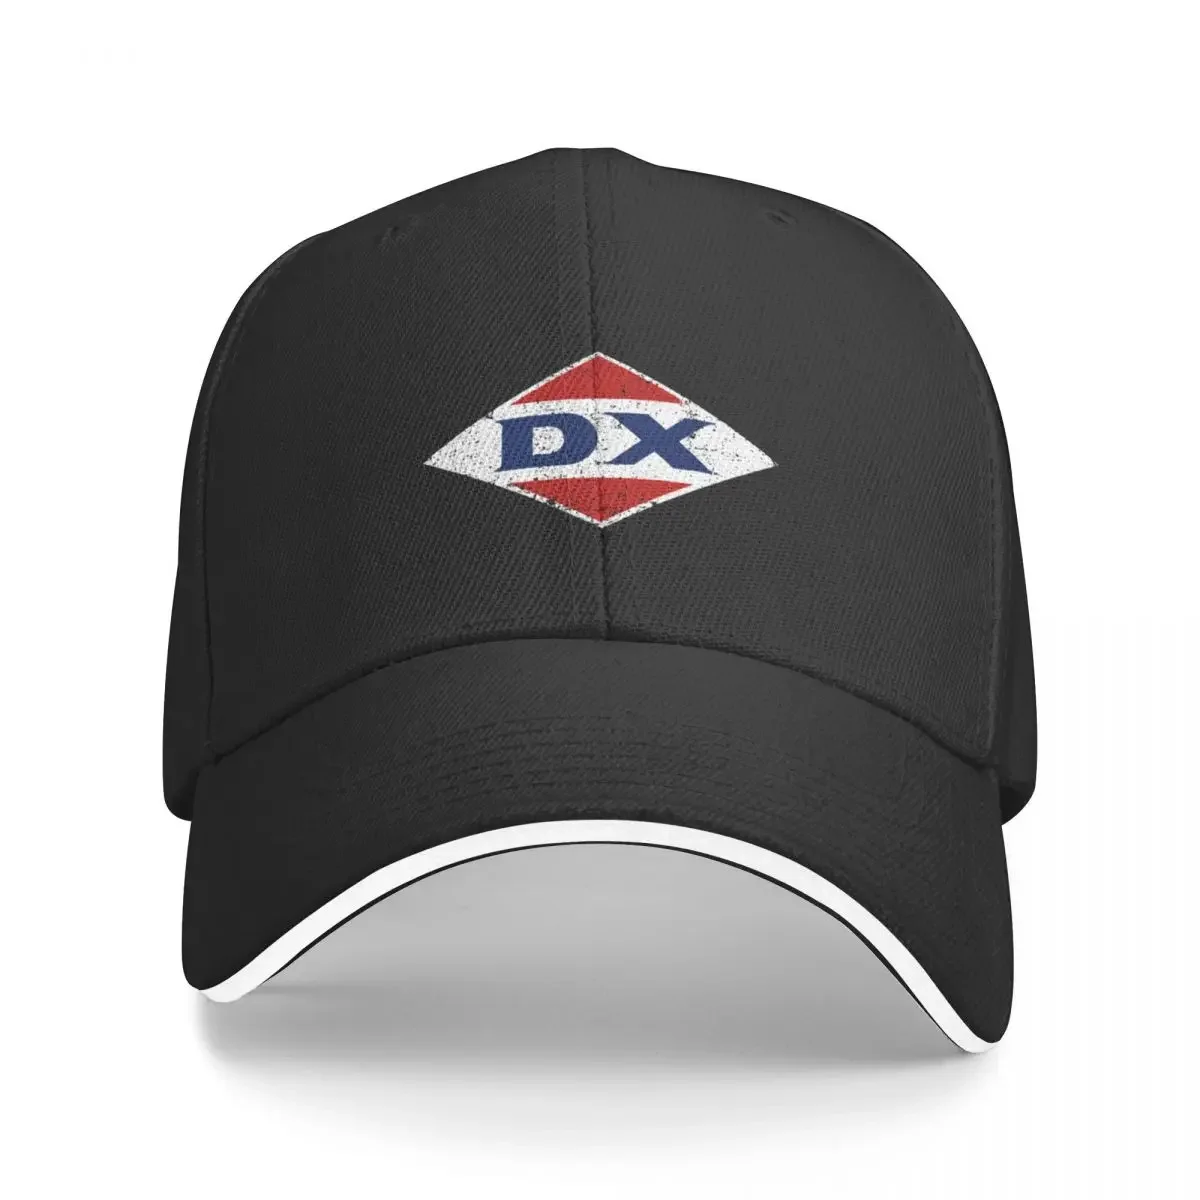 

Бейсболка с надписью DX, бейсболка, кепка, элегантные женские головные уборы для мужчин